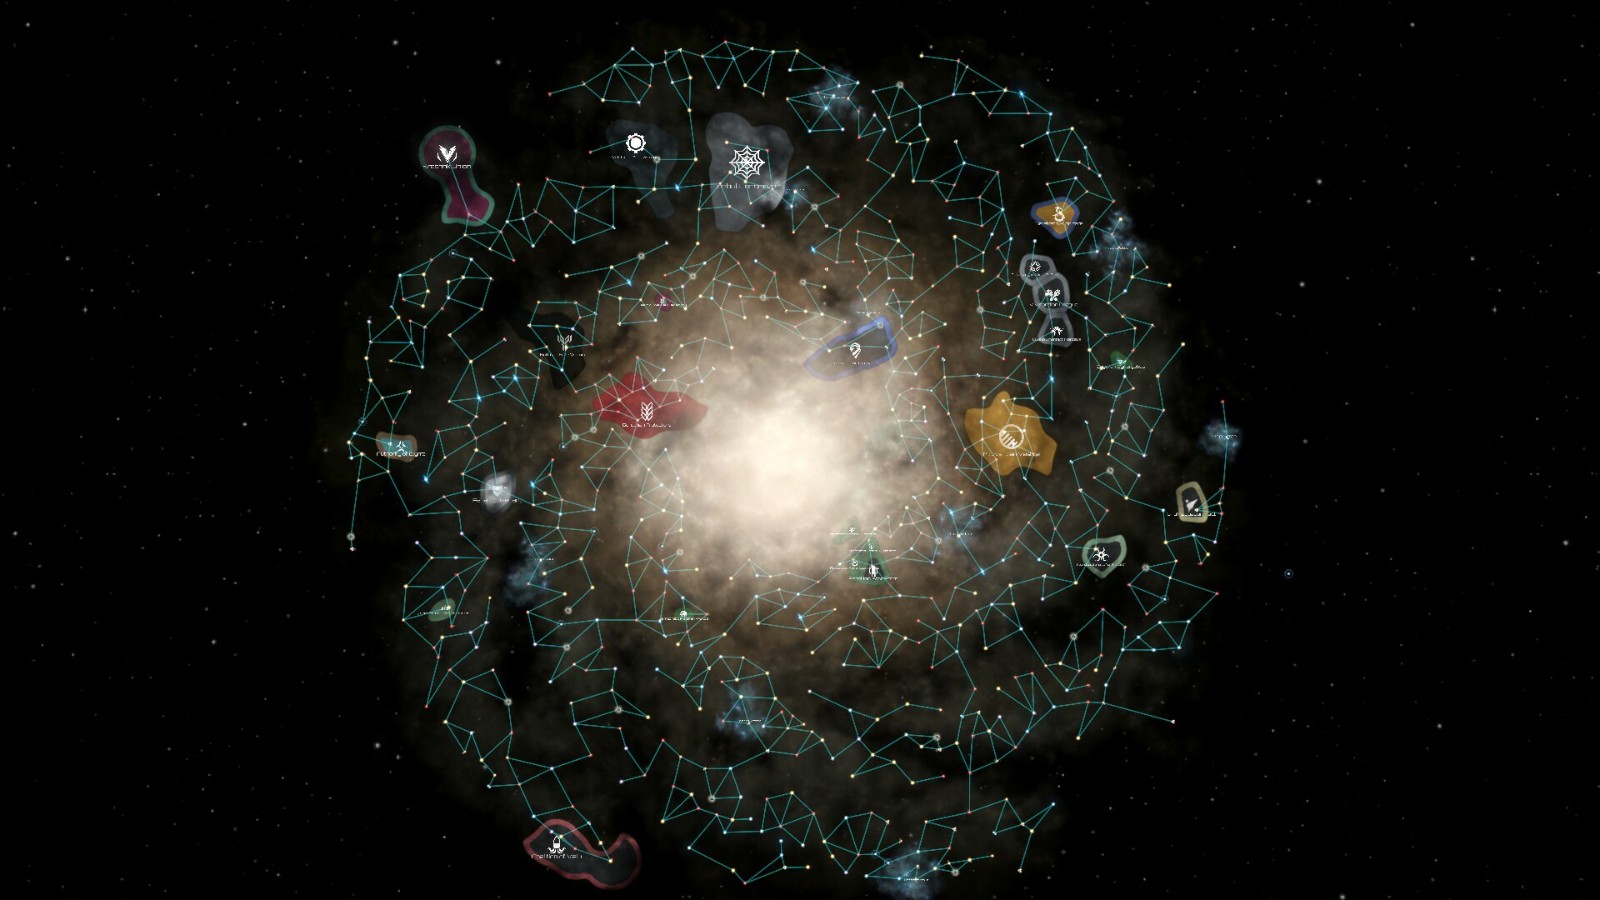 新星系來了《群星》3.6版本「獵戶座」正式上線